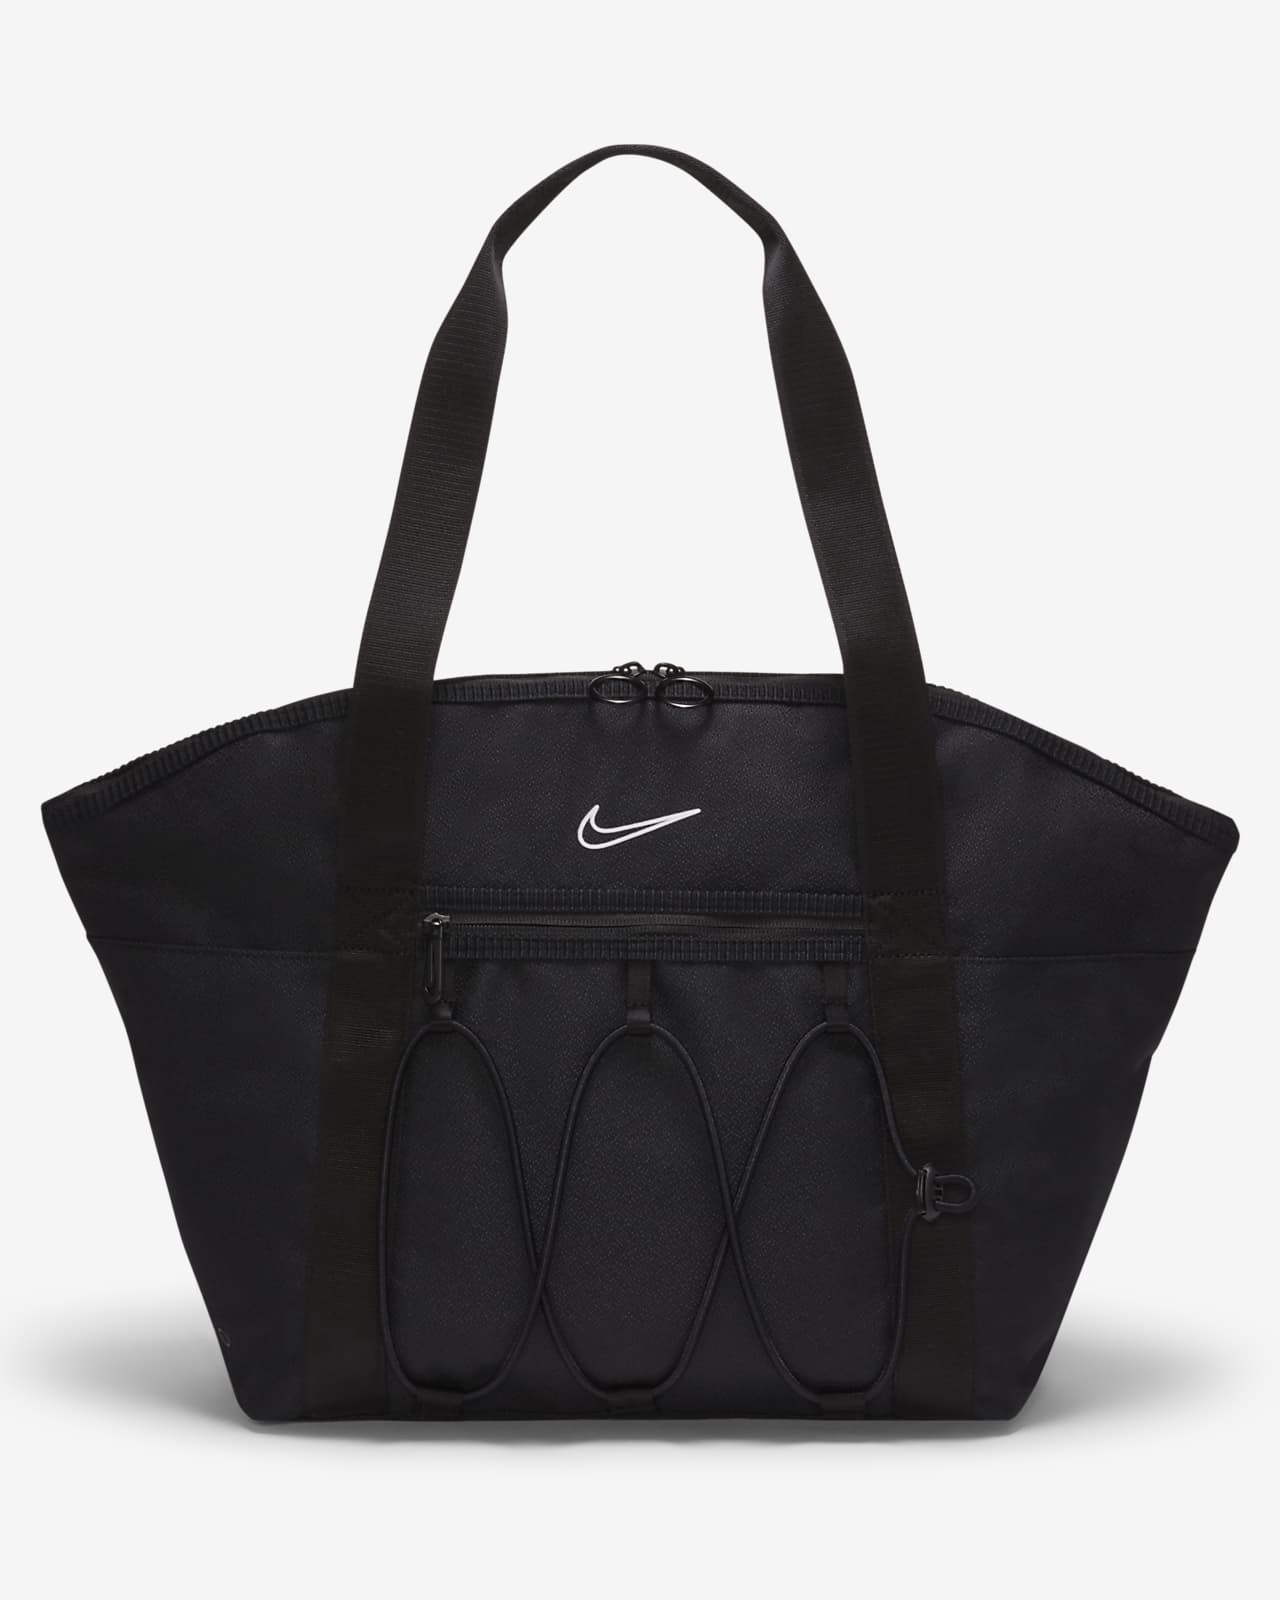 Nike One Women's Training Tote Bag. Nike ID